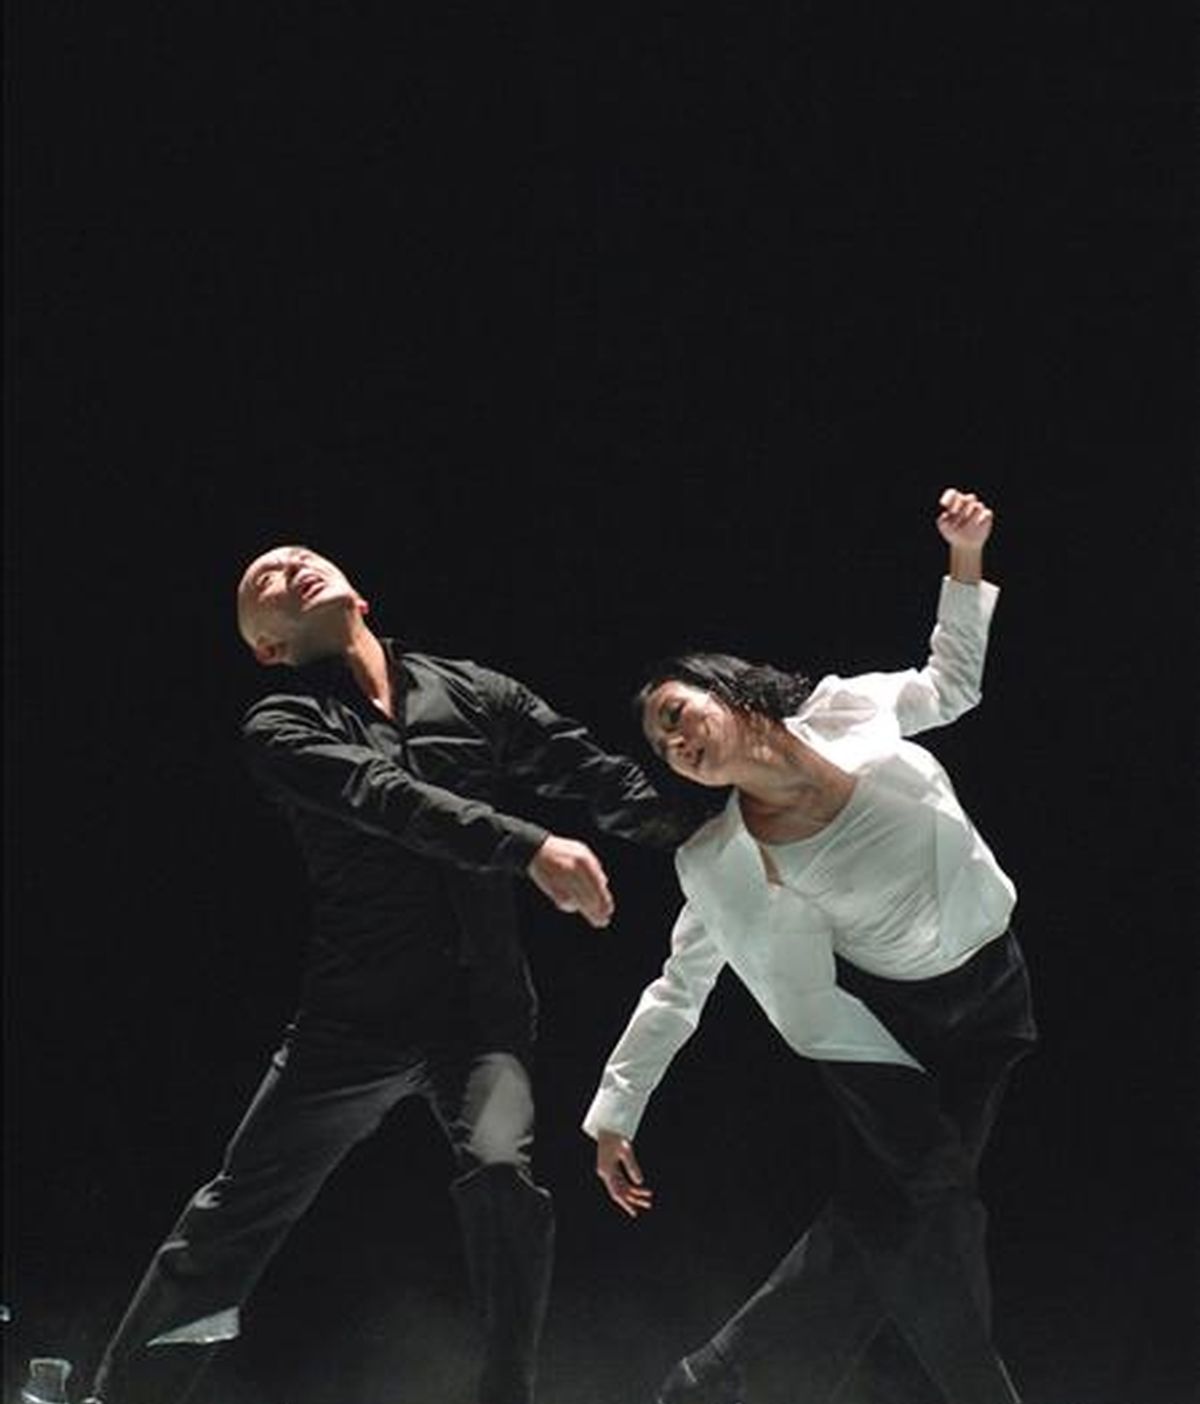 El coreografo Saburo Teshigawara (i) y la bailarina Rihoko Sato bailan sobre cristales en un ensayo del espectáculo de danza, Glass Tooth (Diente de Cristal), que presentó en febrero de 2008 en el Teatro Central de Sevilla. EFE/Archivo